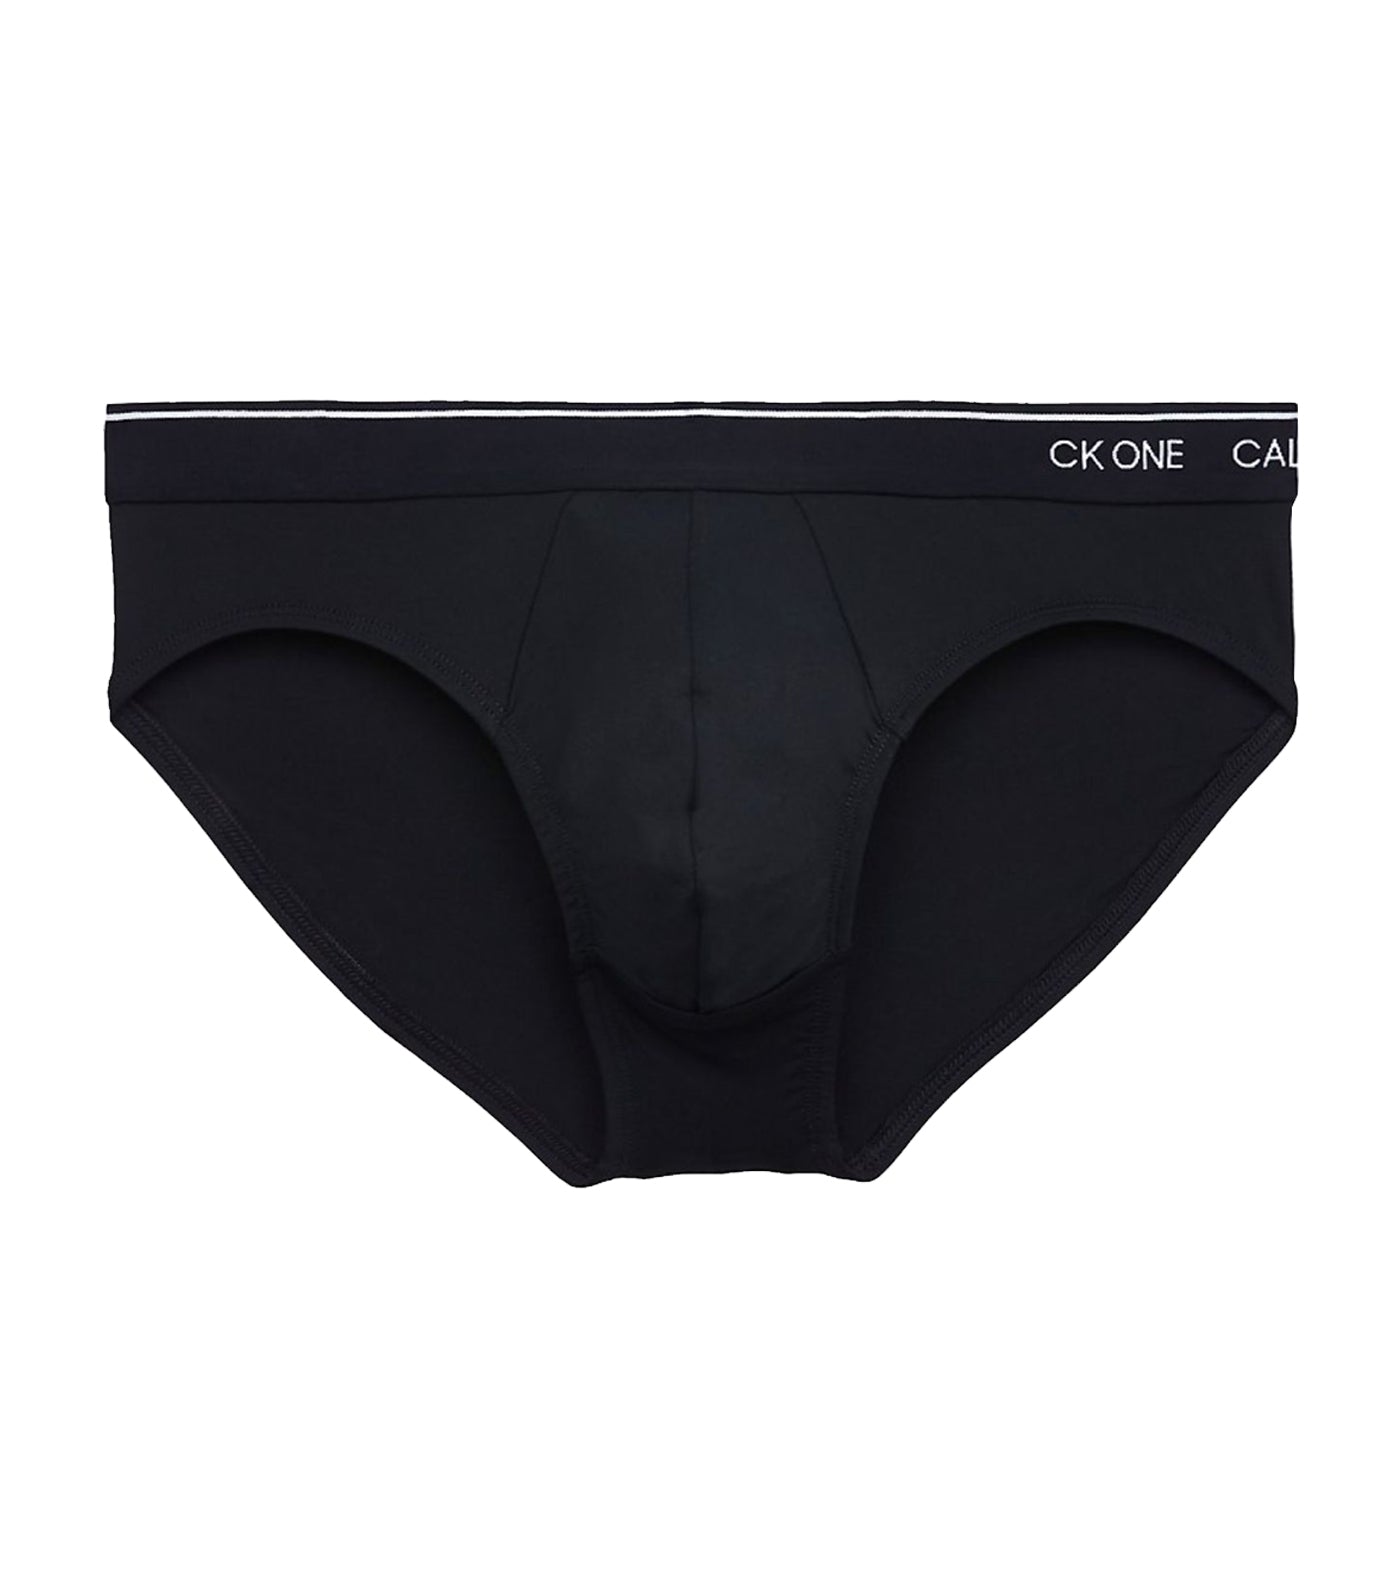 Calvin Klein Men's Underwear CK One Cotton Hip Briefs, Black/Grey